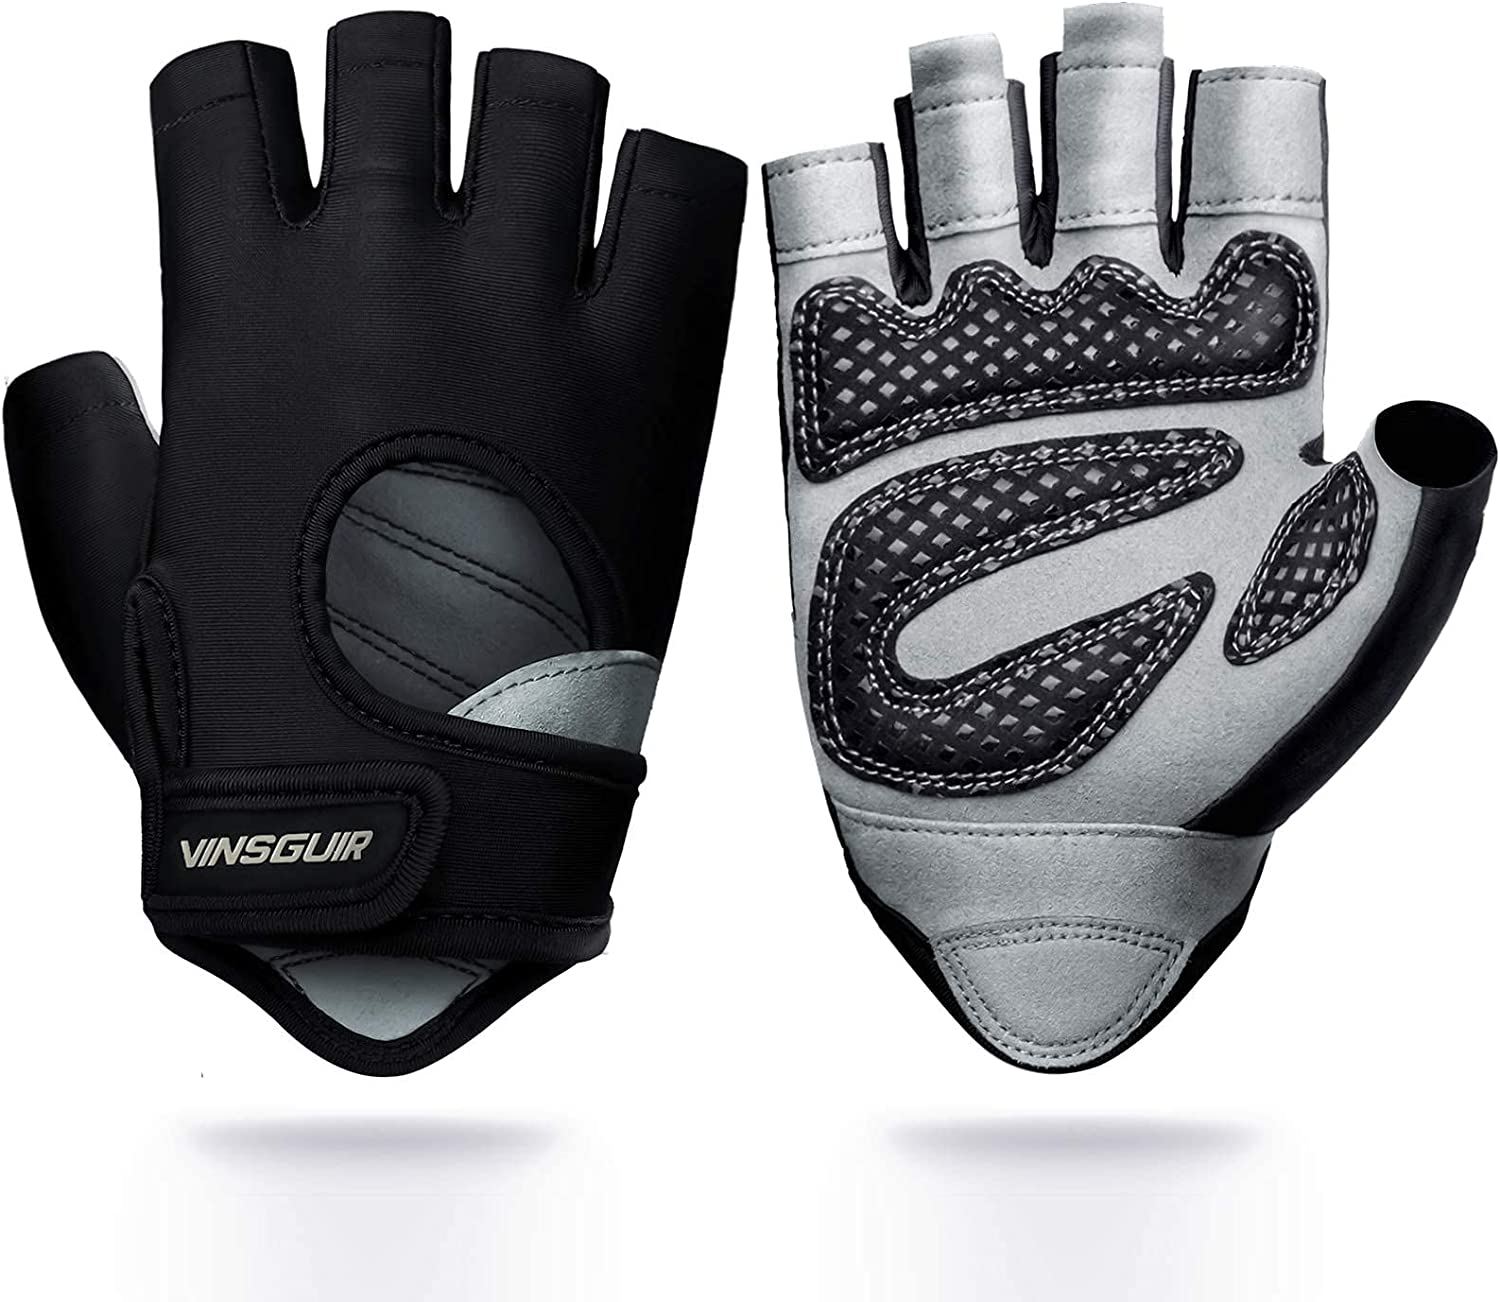 VINSGUIR Workout Gloves - Amazon